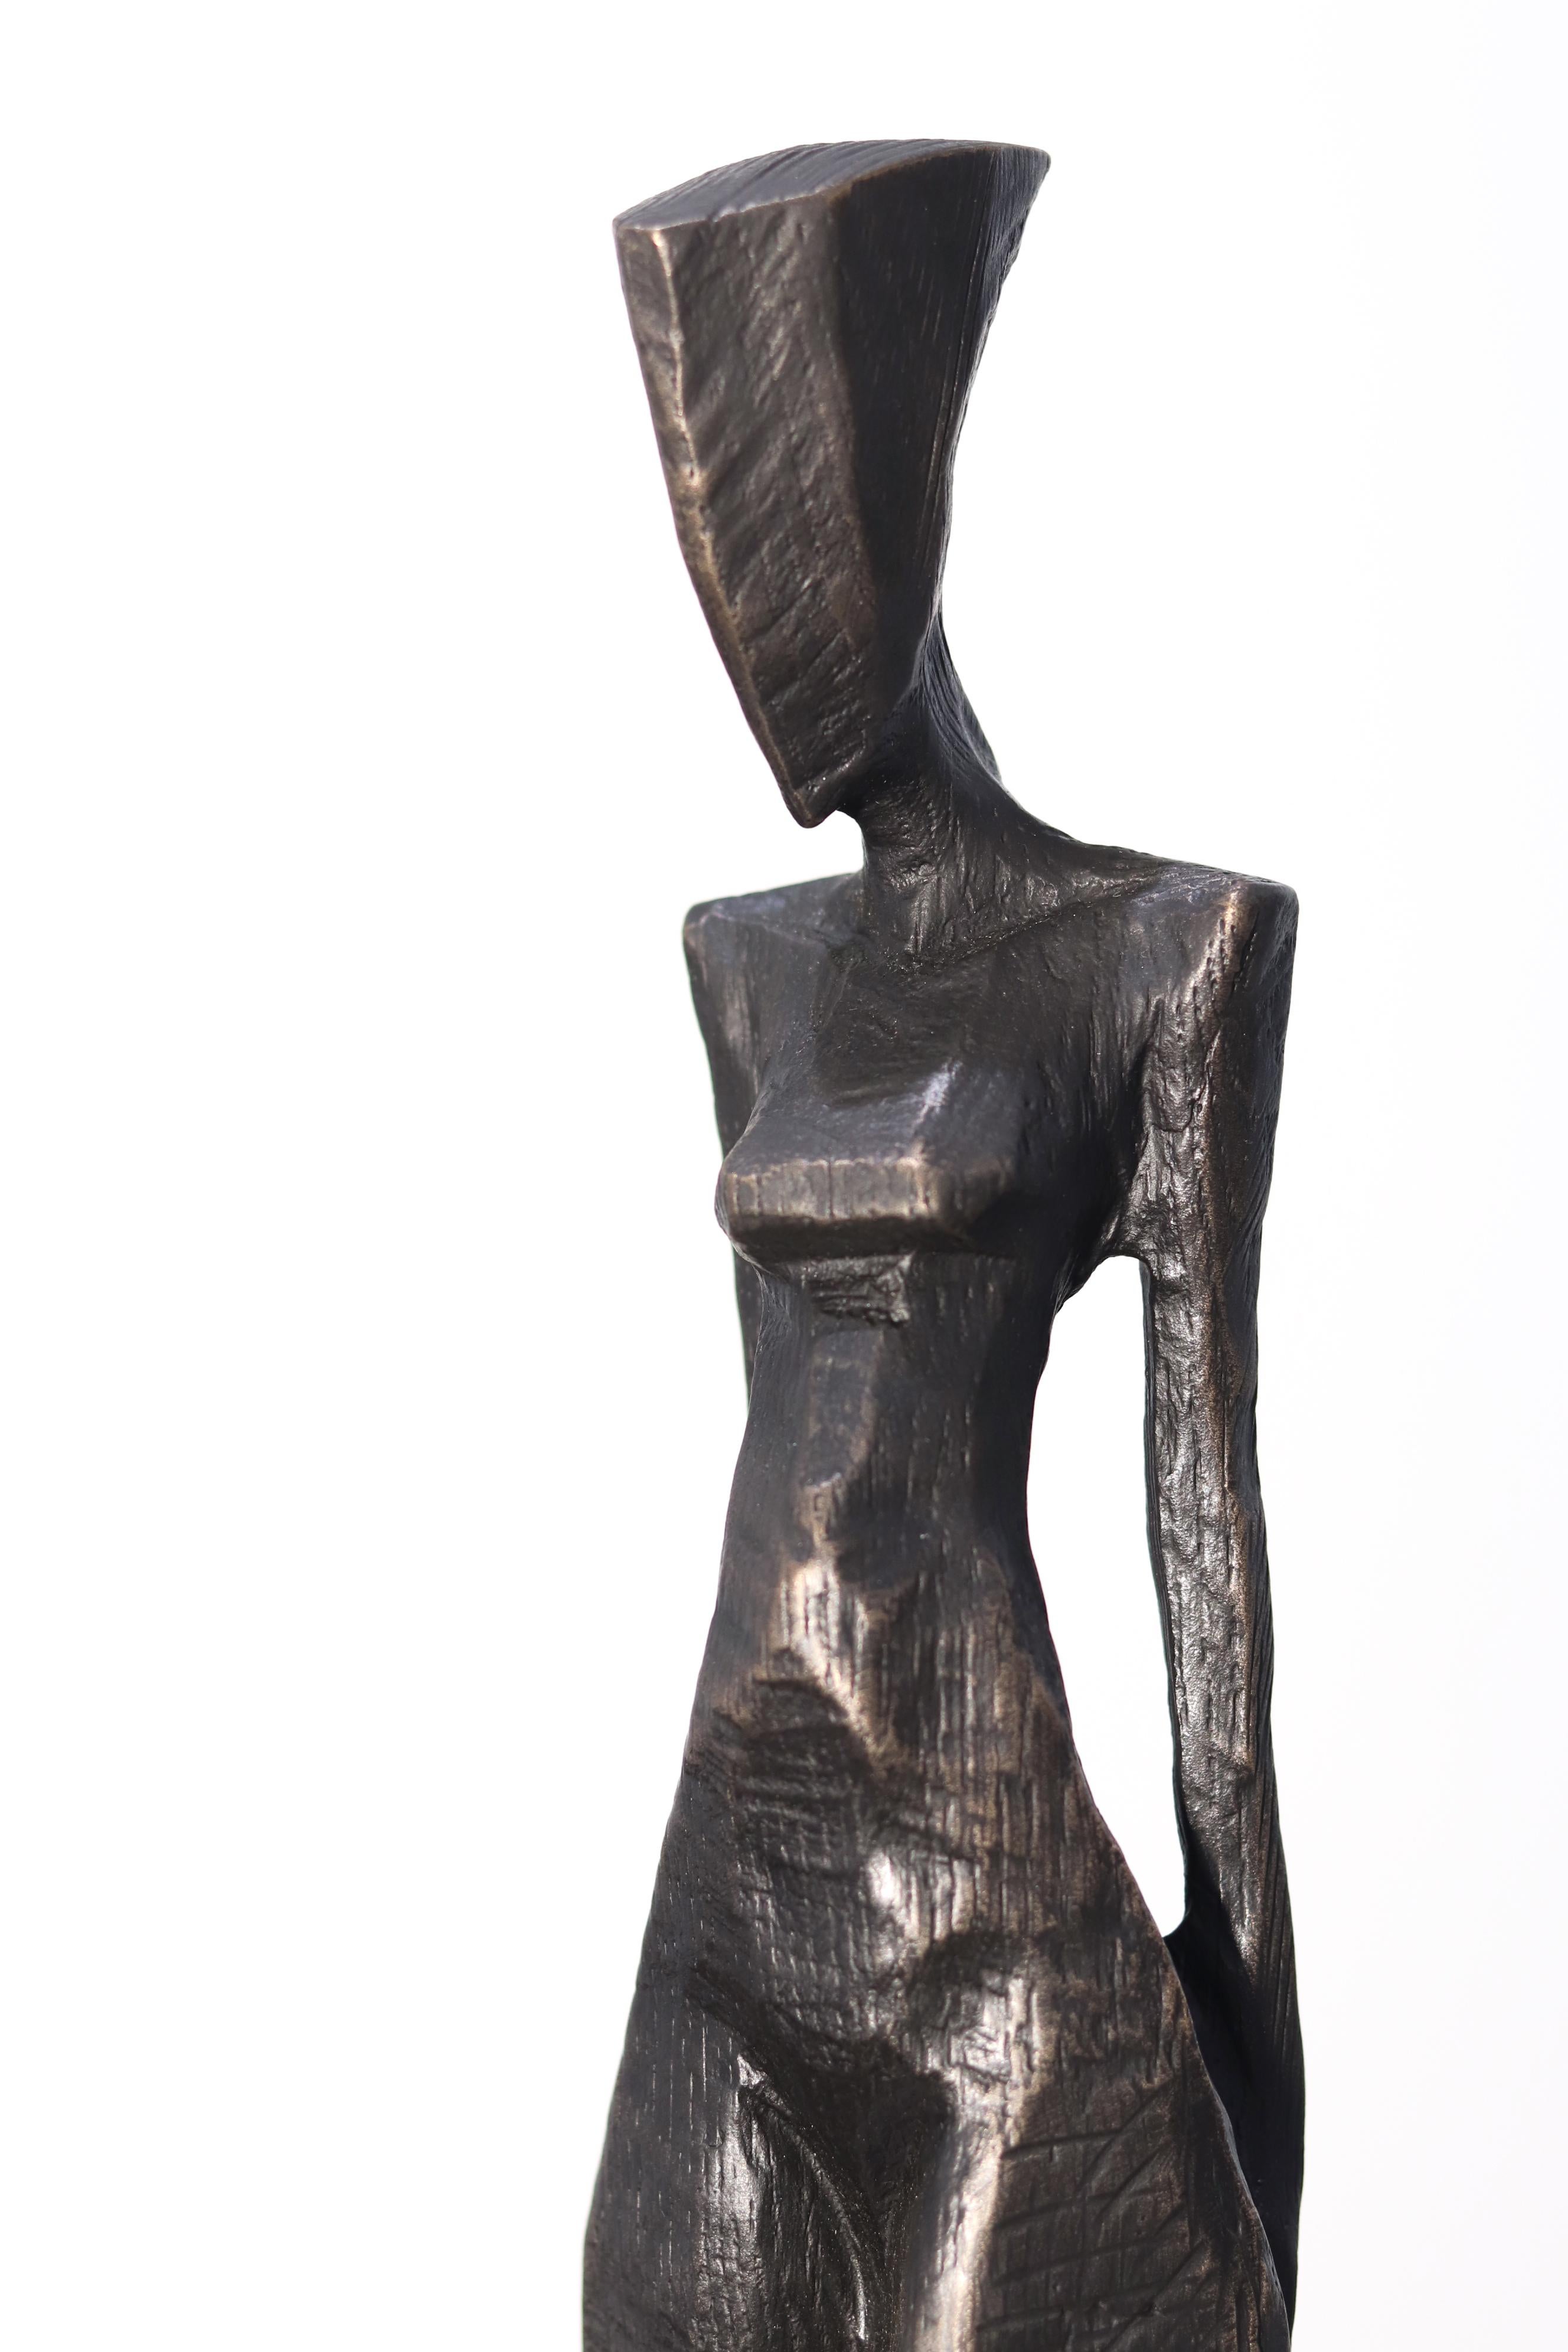 Der deutsche Bildhauer Nando Kallweit fertigt figurative Bronzeskulpturen und -reliefs mit aquilinearer und anmutiger moderner Ausstrahlung. Kallweit lässt sich von scheinbar disparaten Kulturen inspirieren: von der Kraft altägyptischer Skulpturen,